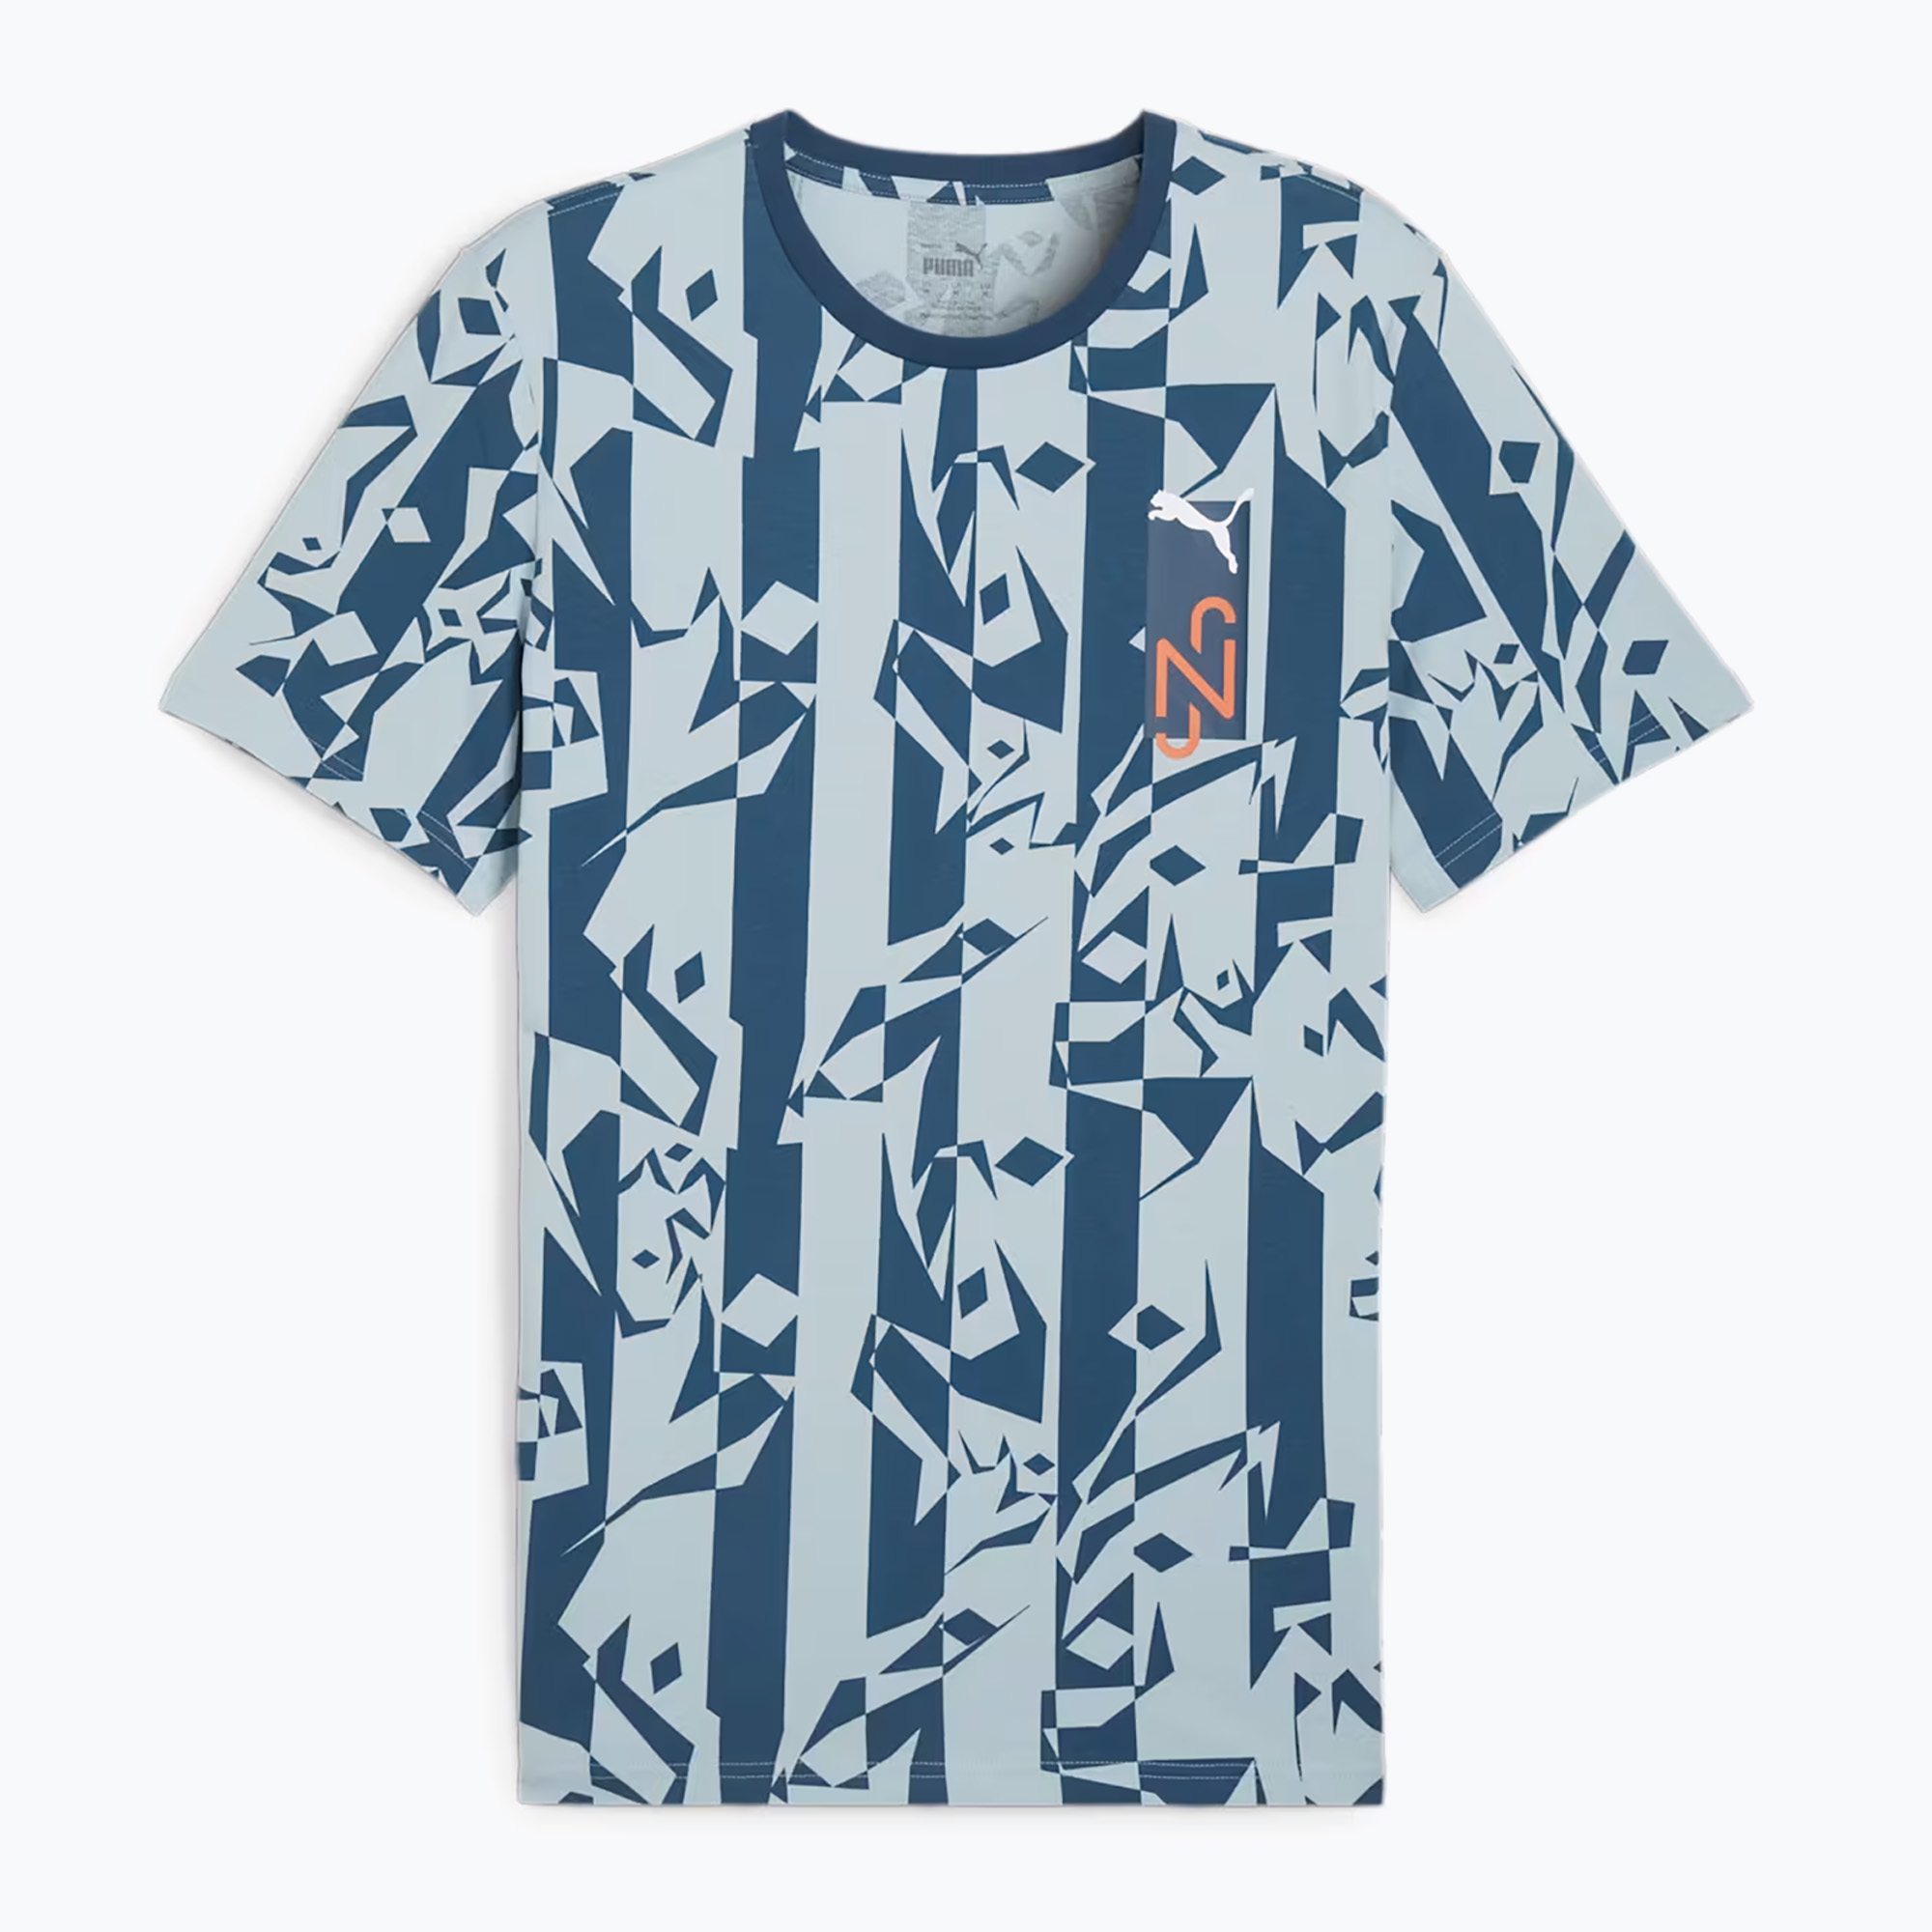 Мъжка футболна тениска PUMA Neymar Jr Creativity Logo ocean tropic/turquoise surf